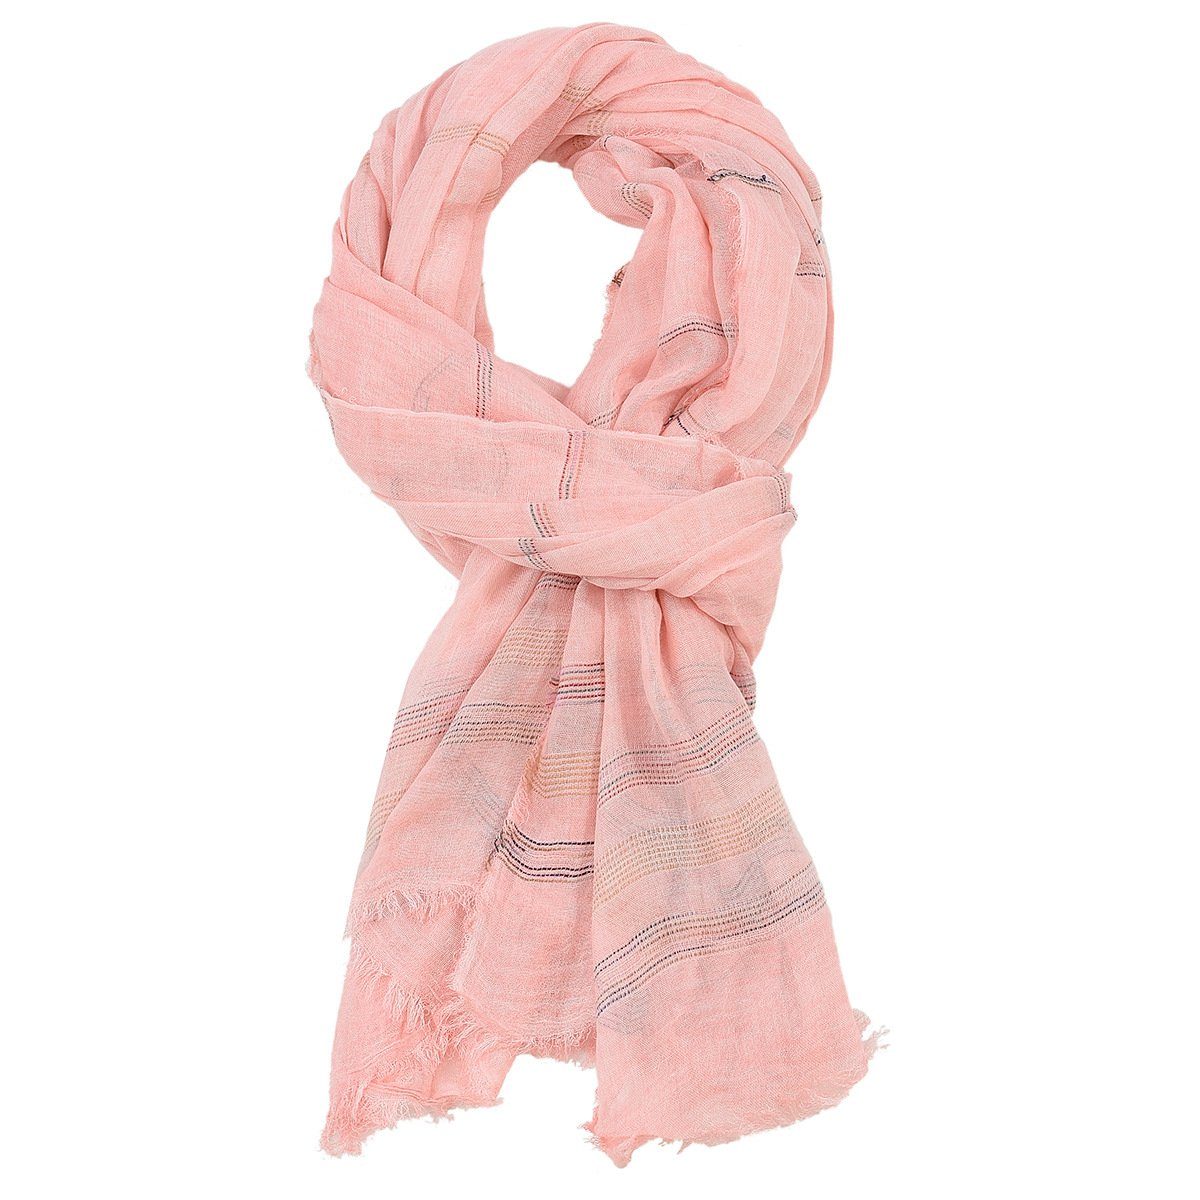 GelldG Modeschal Reversible Warme und weiche Unisex Schal Stola Wrap Solid Color rosa | Modeschals